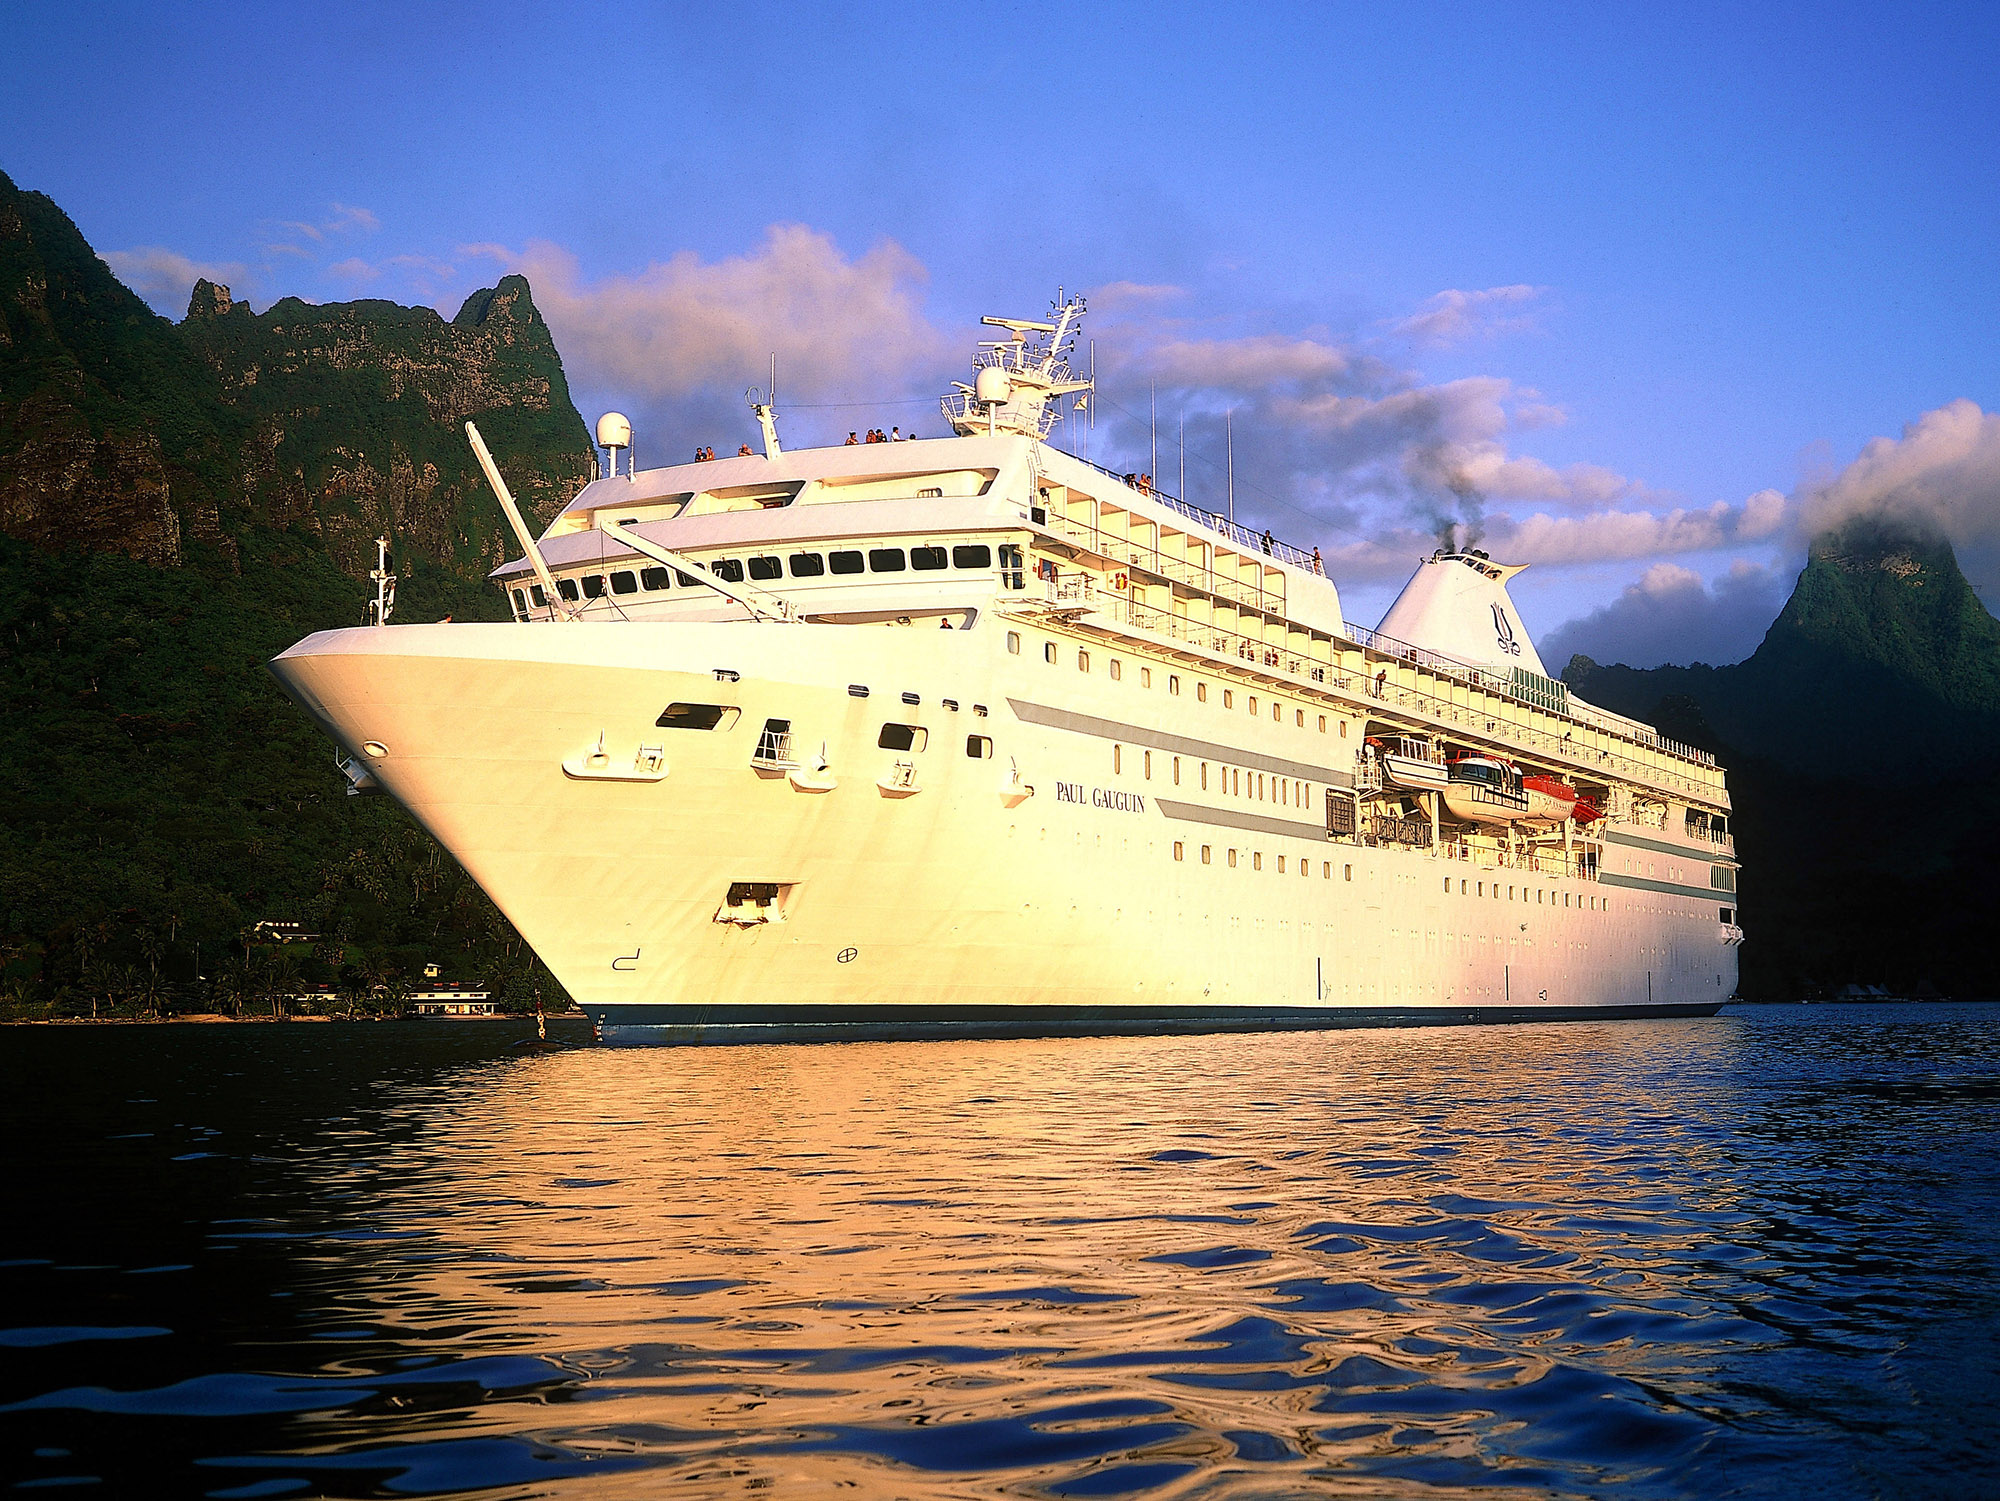 The Paul Gaugin cruise ship.